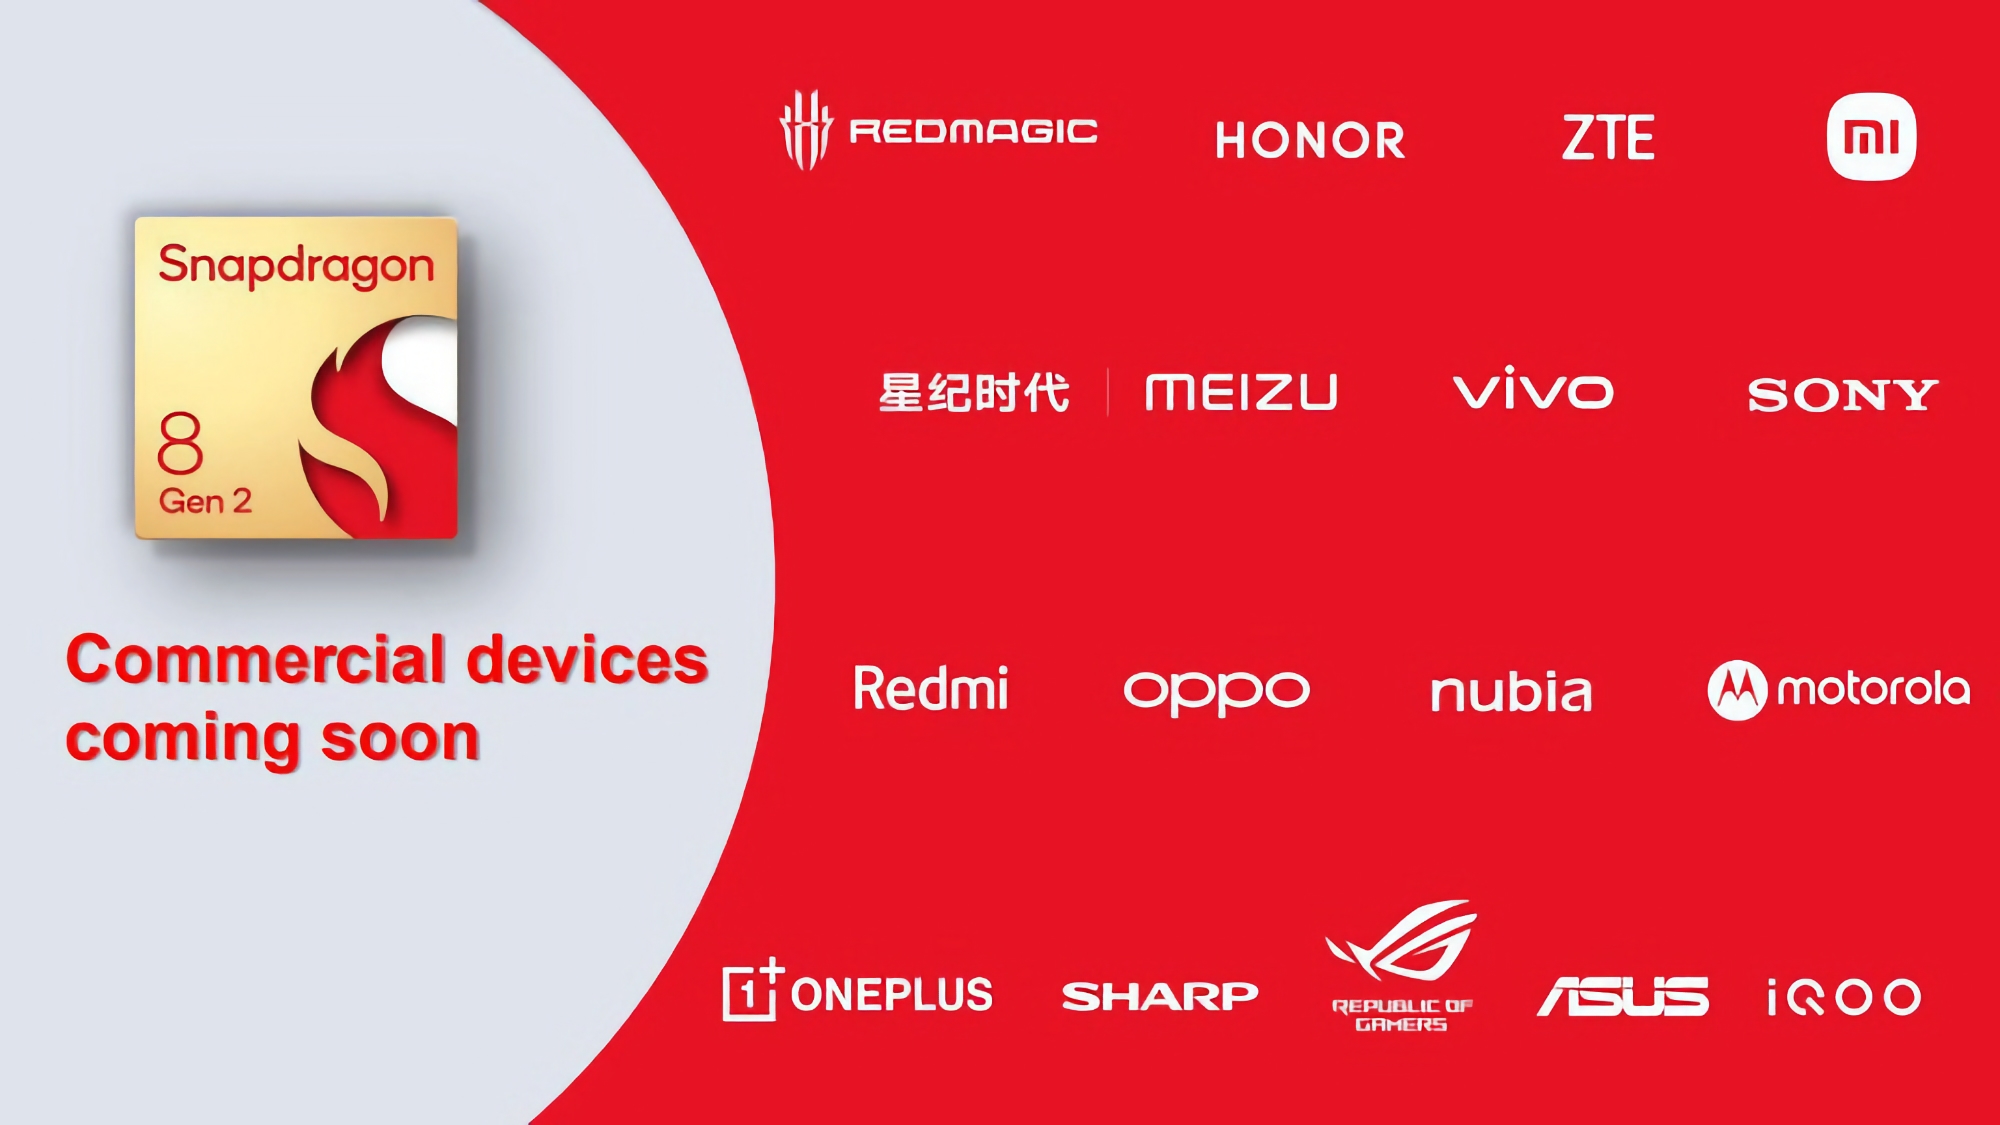 ASUS ROG, Honor, Sony, Motorola, ZTE, OnePlus, OPPO y otros: la lista de fabricantes de smartphones Android que utilizarán el nuevo chip Snapdragon 8 Gen 2